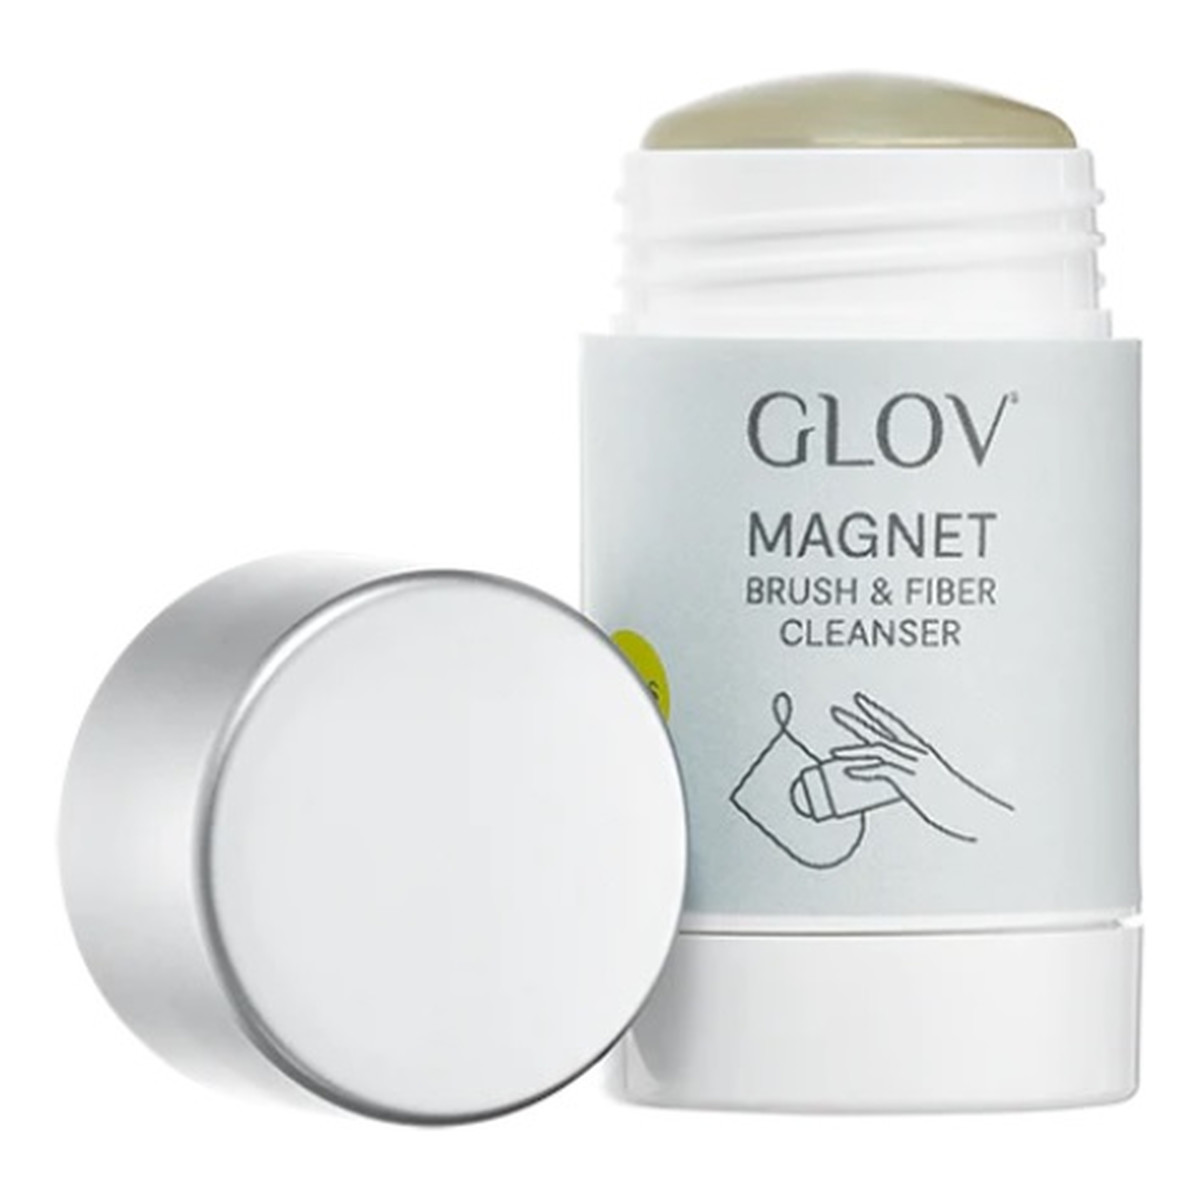 Glov Magnet Cleanser Mydło do czyszczenia rękawic i pędzli do makijażu 40g